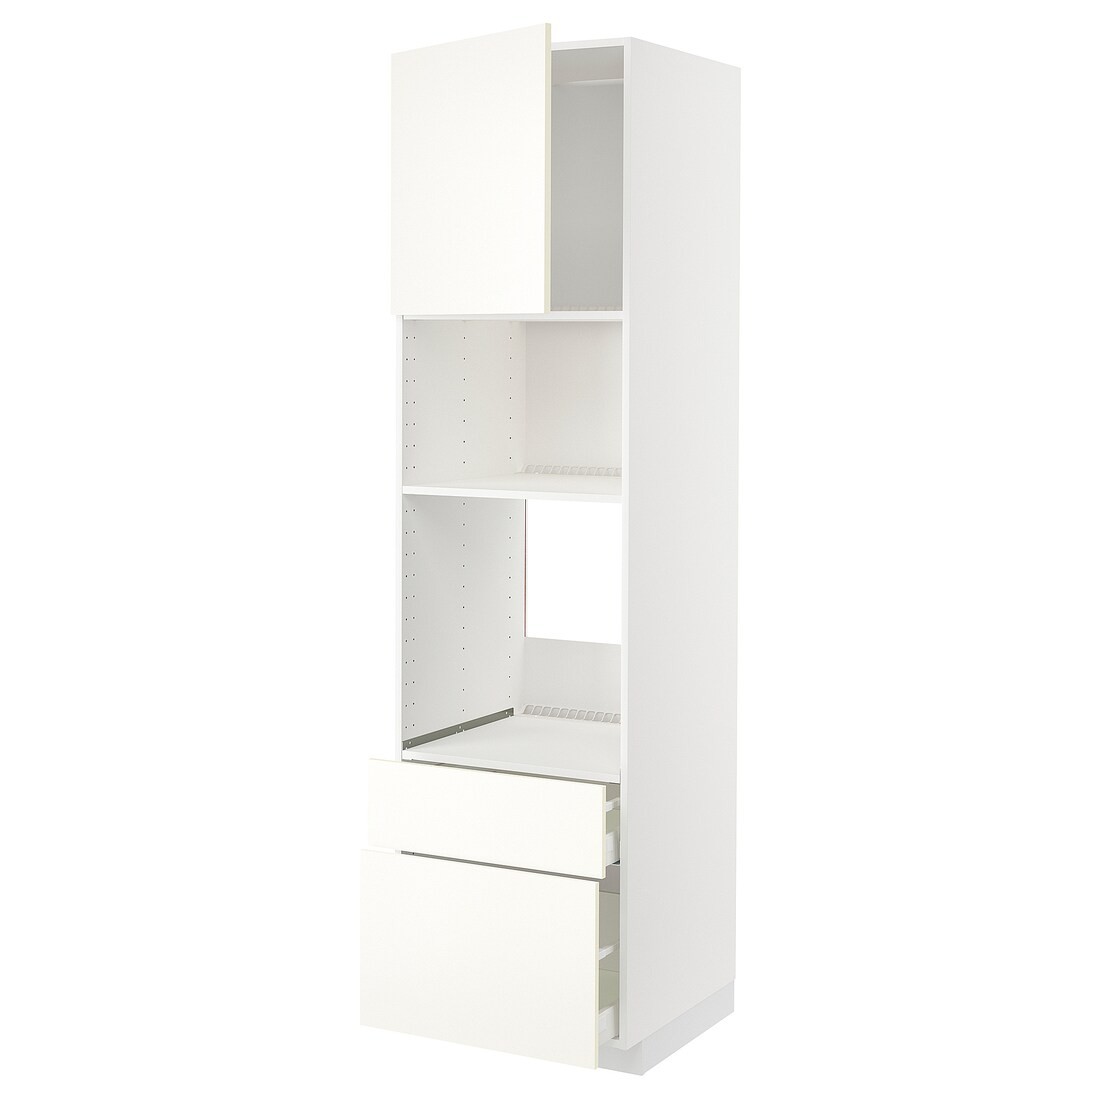 IKEA METOD МЕТОД / MAXIMERA МАКСИМЕРА Высокий шкаф для духовки / микроволновки с дверями / 2 ящиками, белый / Vallstena белый 99507444 995.074.44